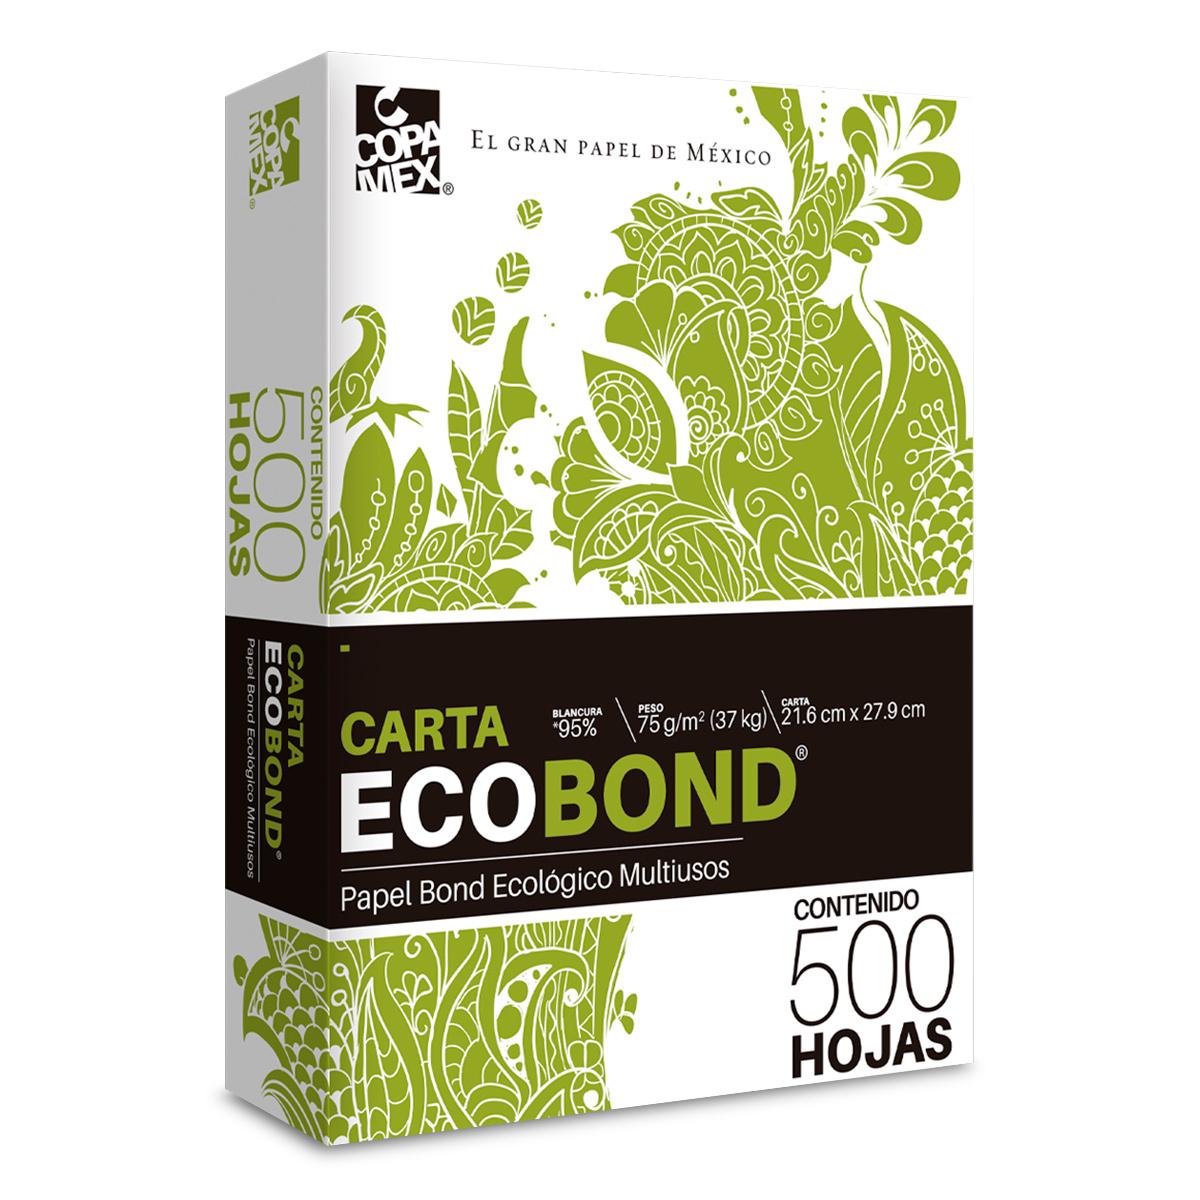 Papel Bond Ecológico Carta Copamex Eco Bond Paquete 500 hojas blancas